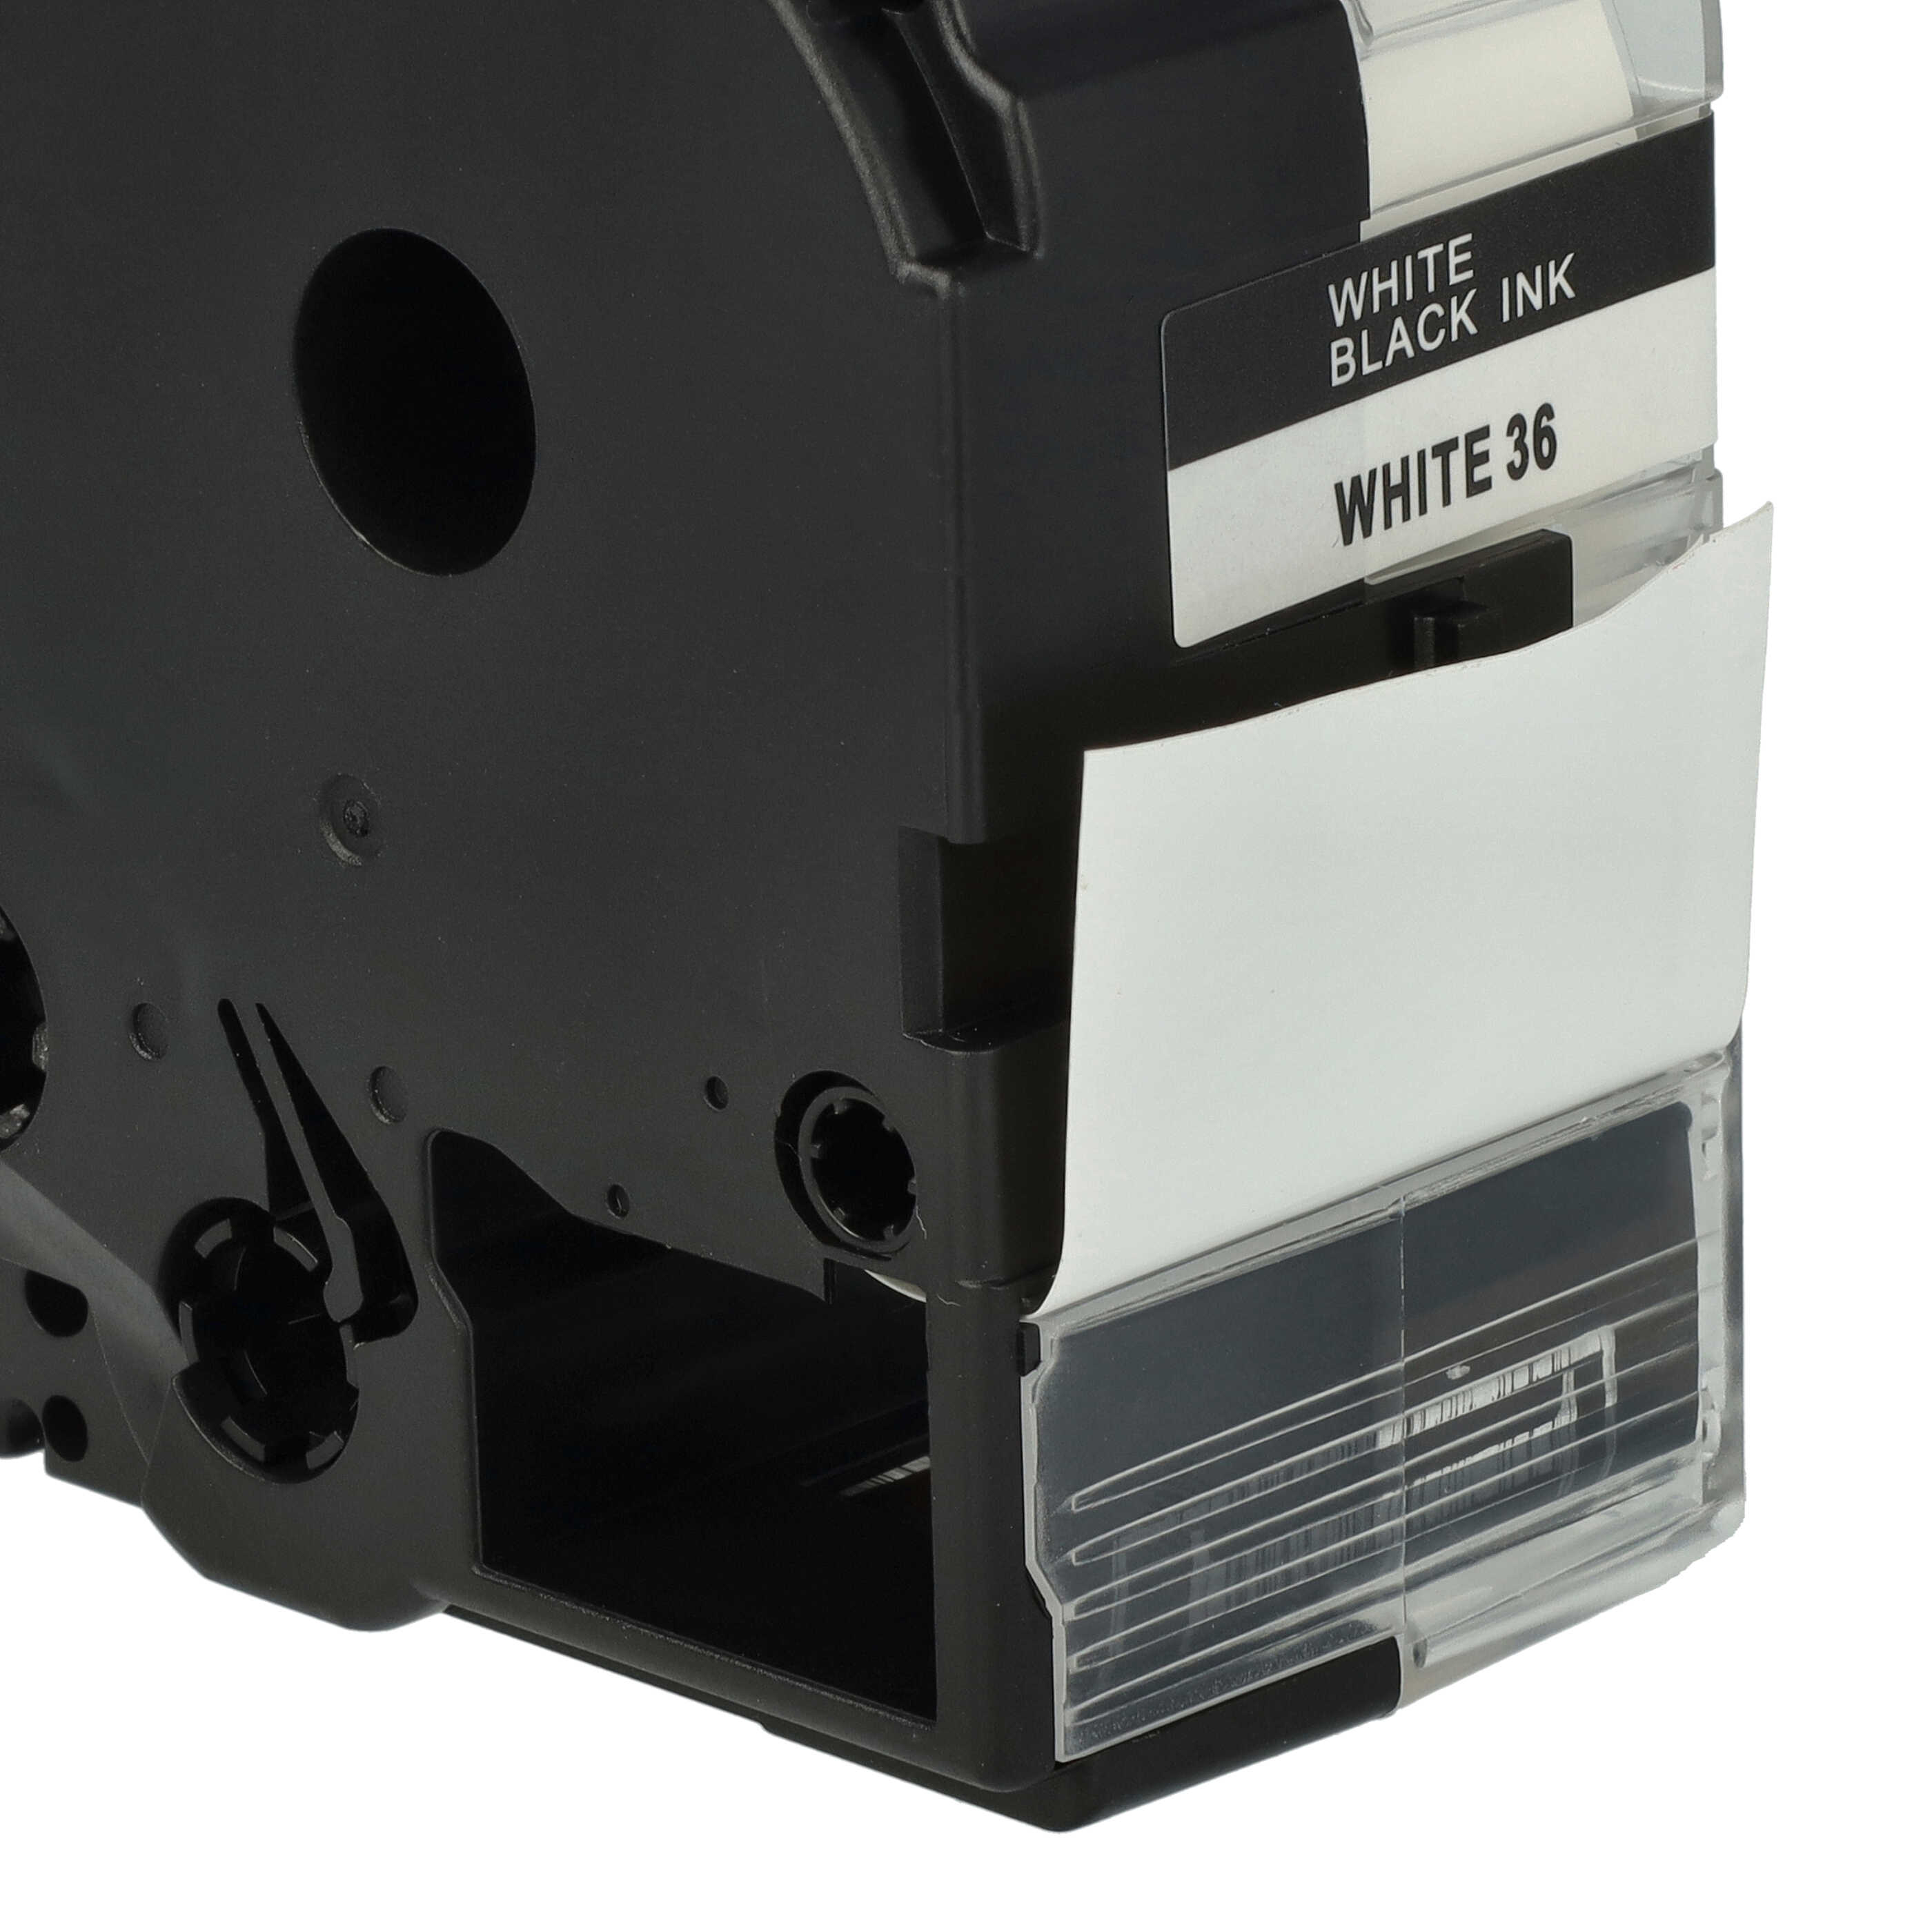 Cassetta nastro sostituisce Epson LC-7WBN per etichettatrice Epson 36mm nero su bianco